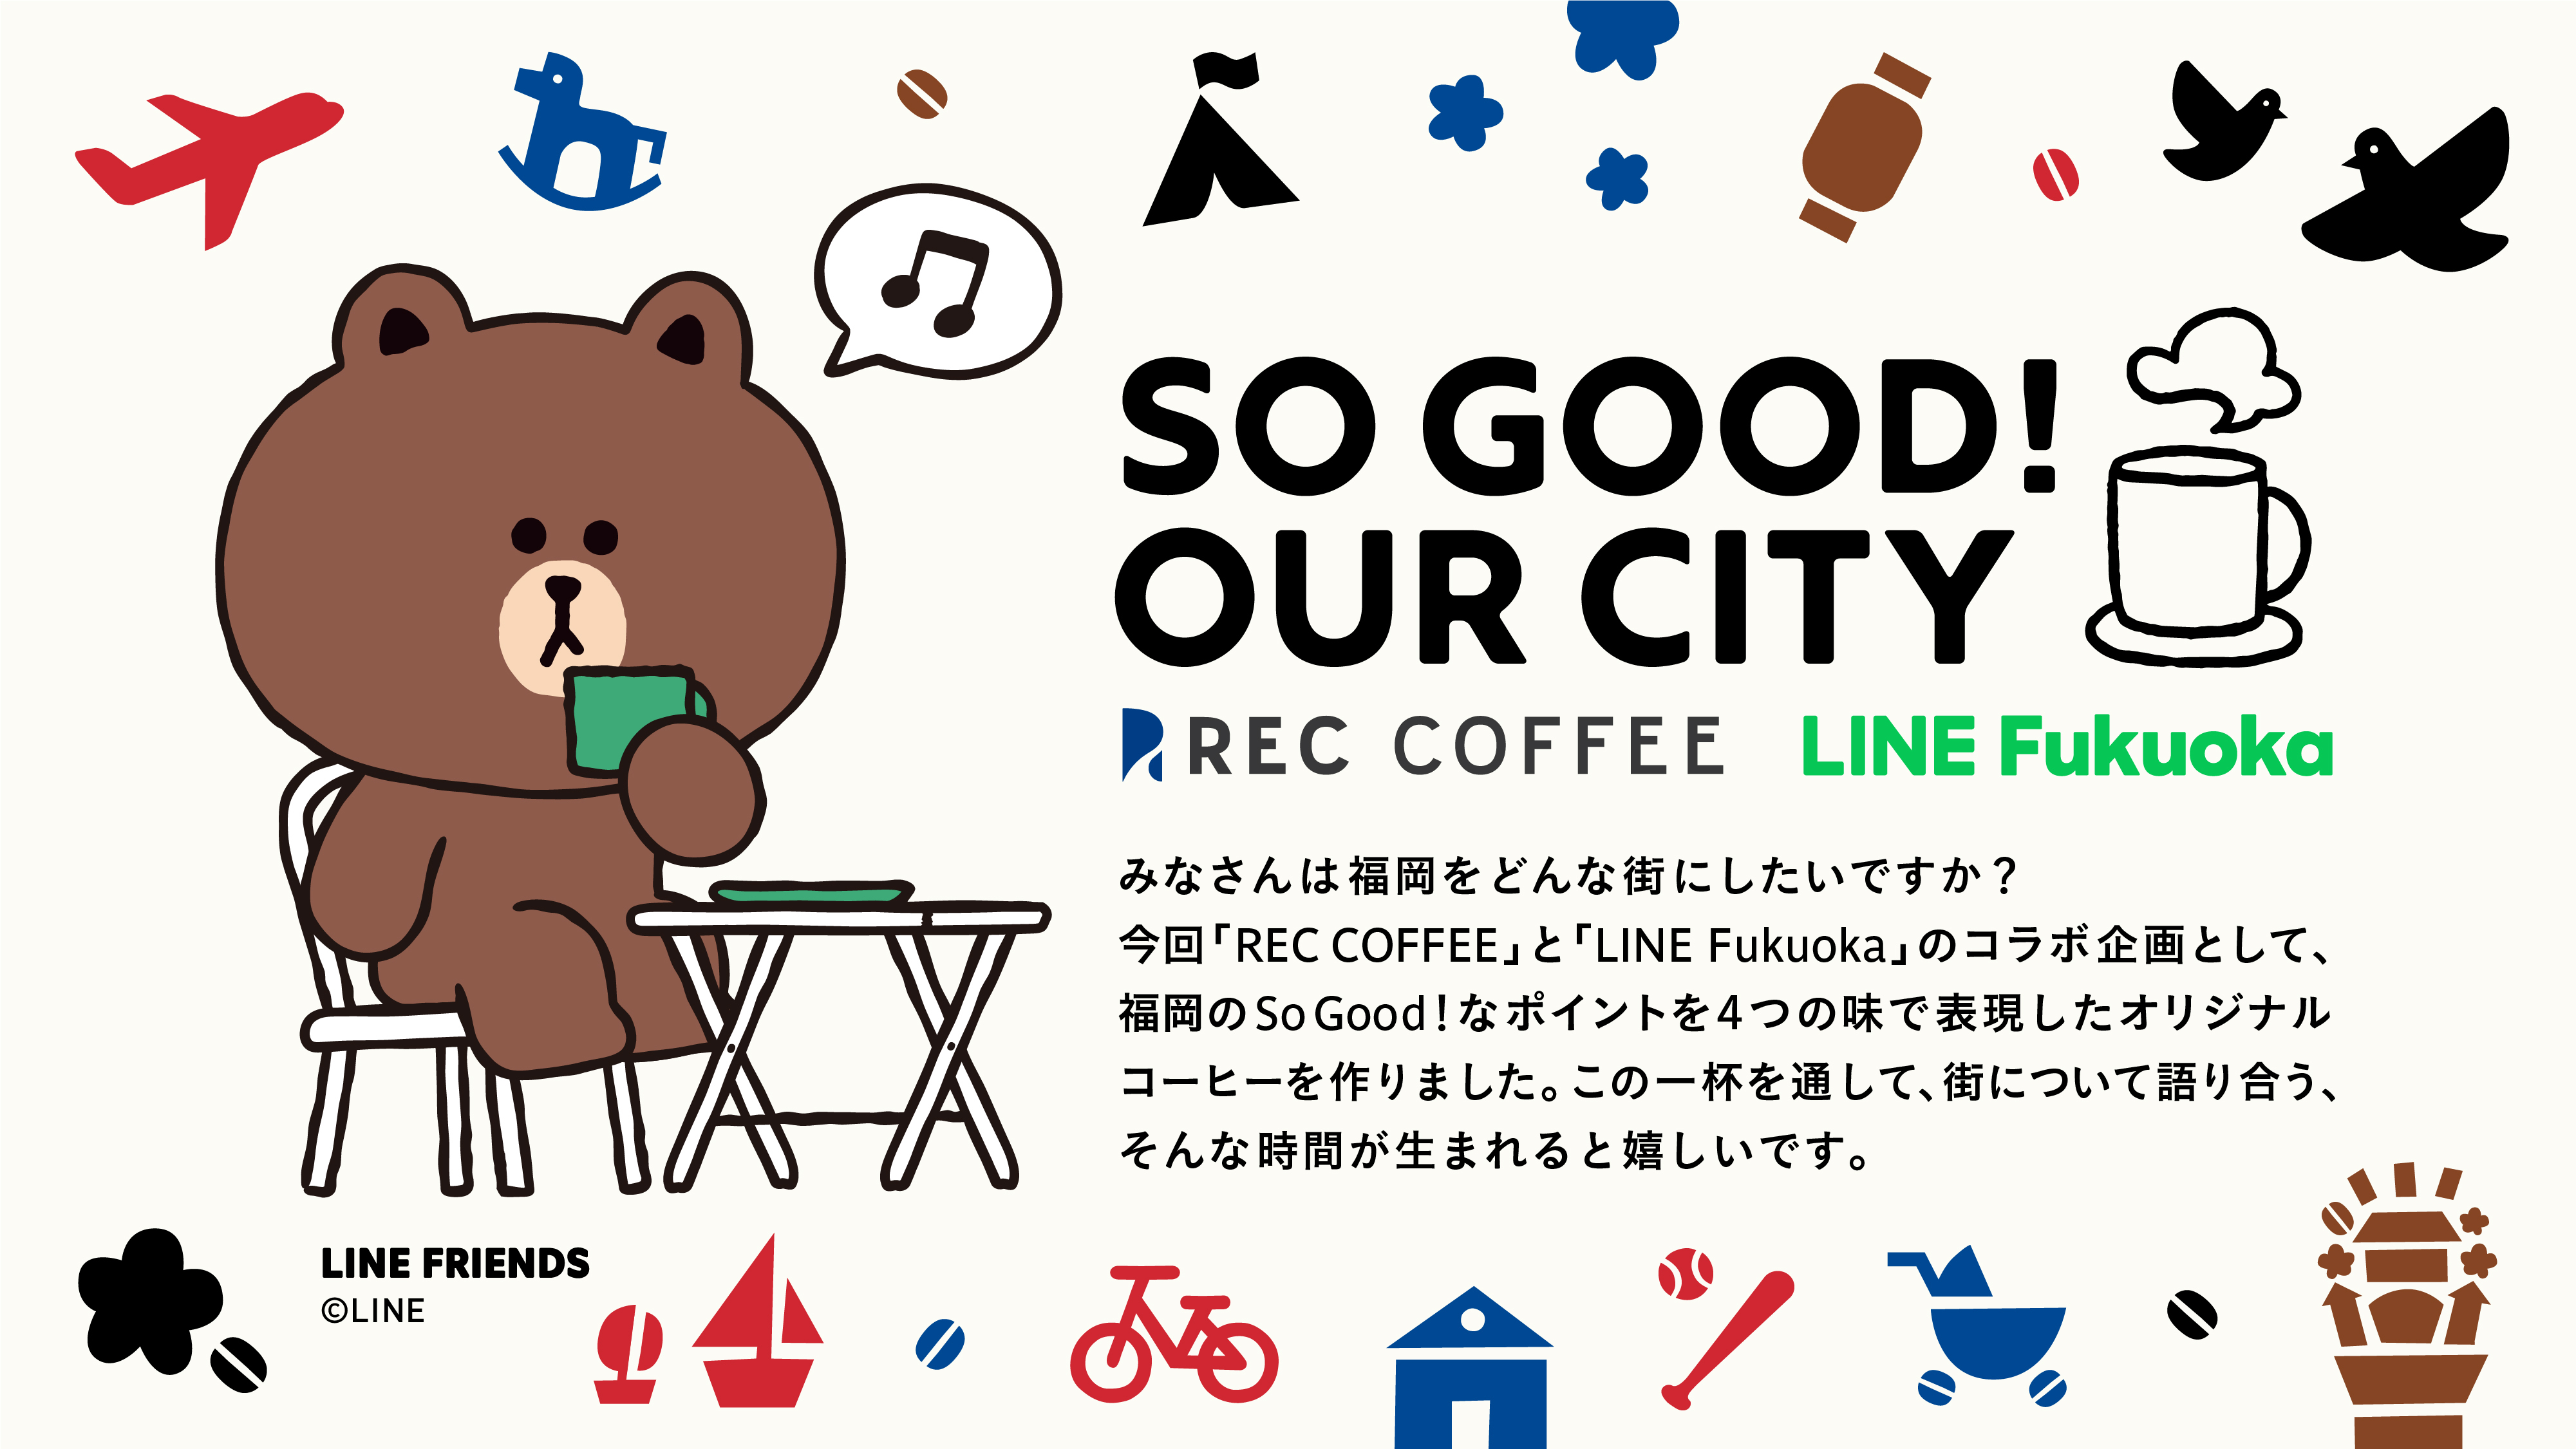 ＜福岡発＞REC COFFEEとLINE Fukuokaが
一杯のコーヒーから街の未来を思う共同企画を実施　
福岡の魅力を表現したオリジナルコーヒーバッグをプレゼント